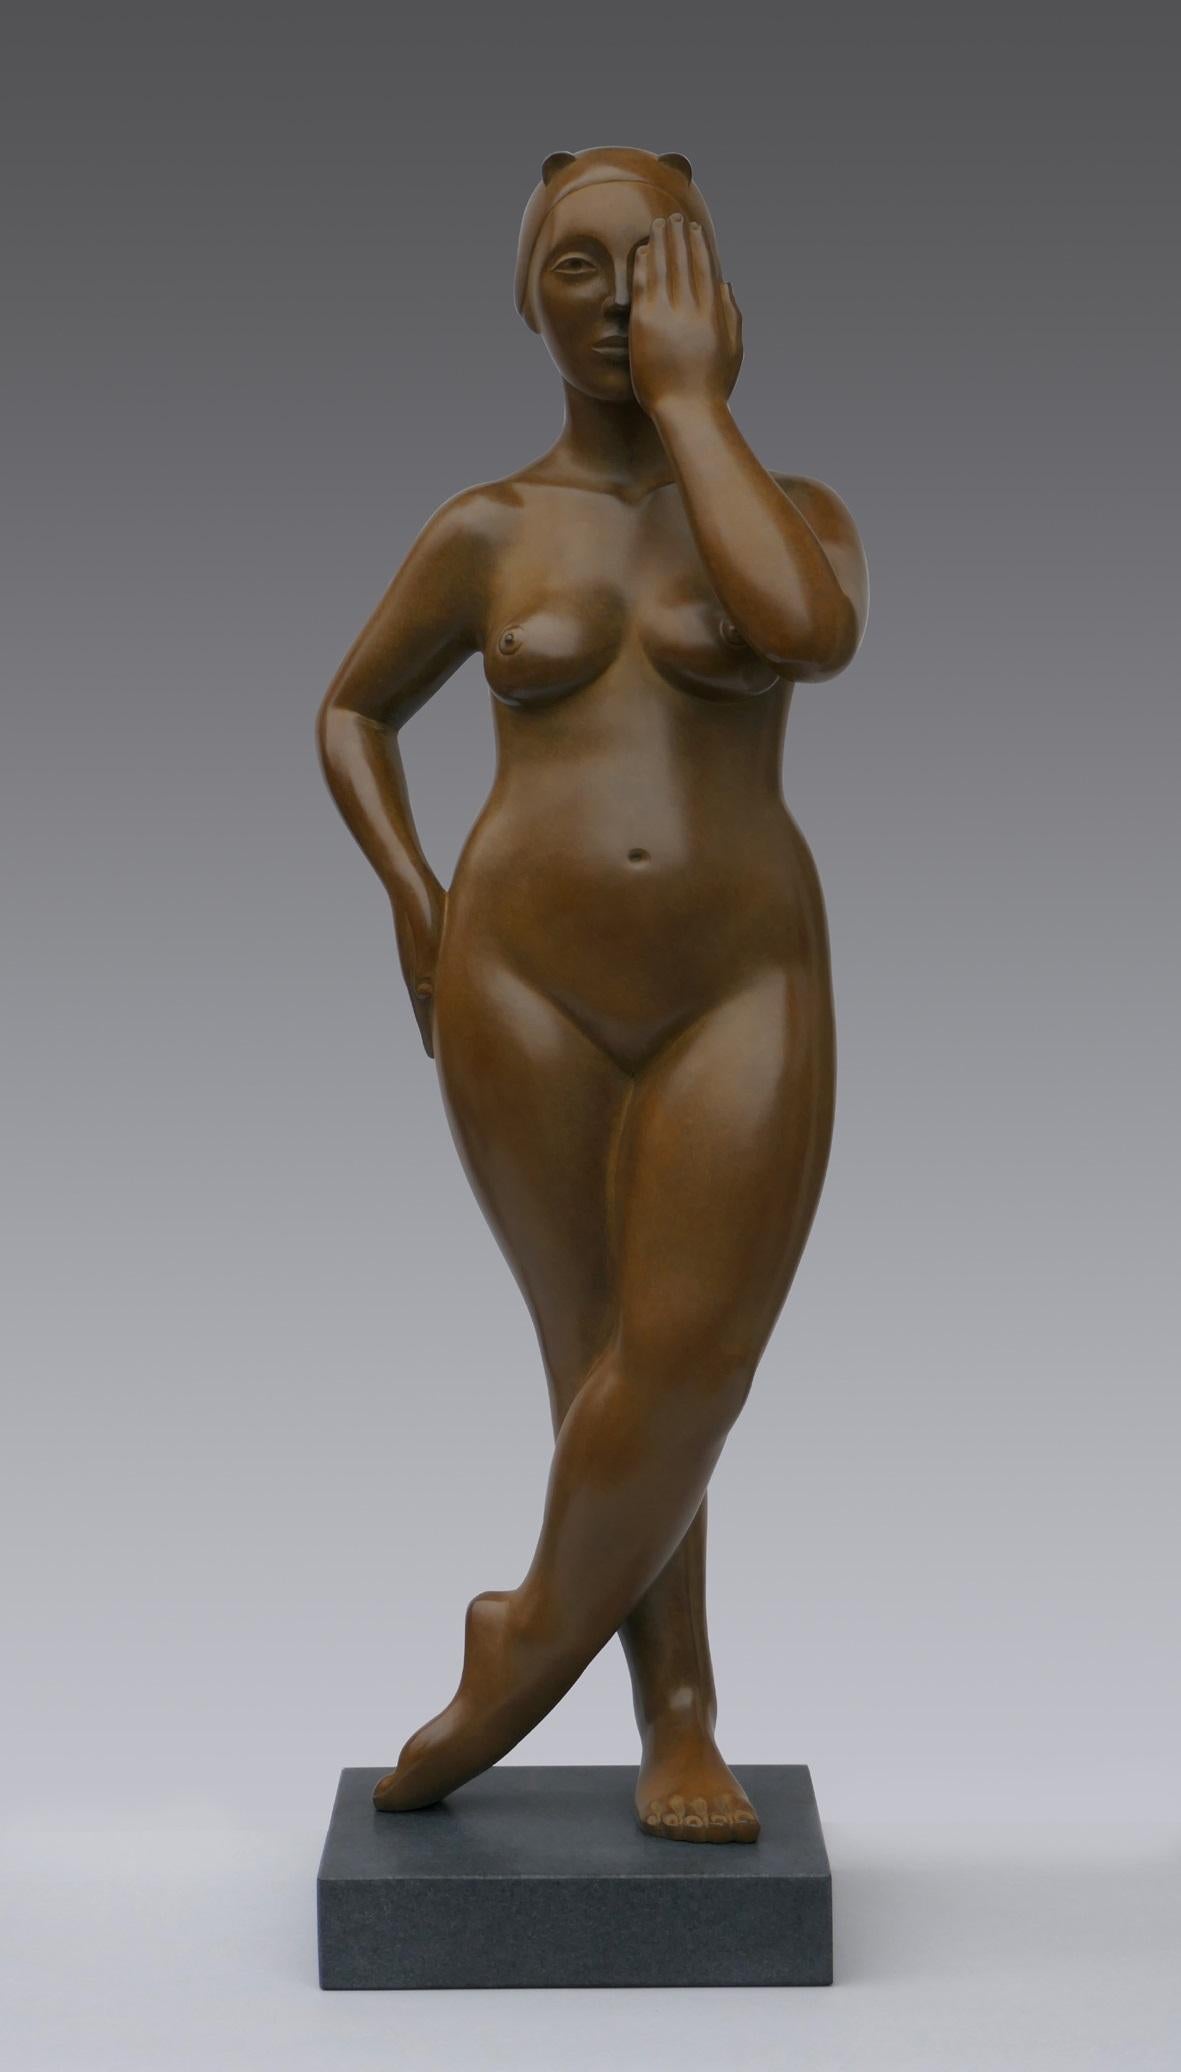 Bronze-Skulptur „Hide and Seek“, weiblicher Akt, zeitgenössische Skulptur – Sculpture von Erwin Meijer